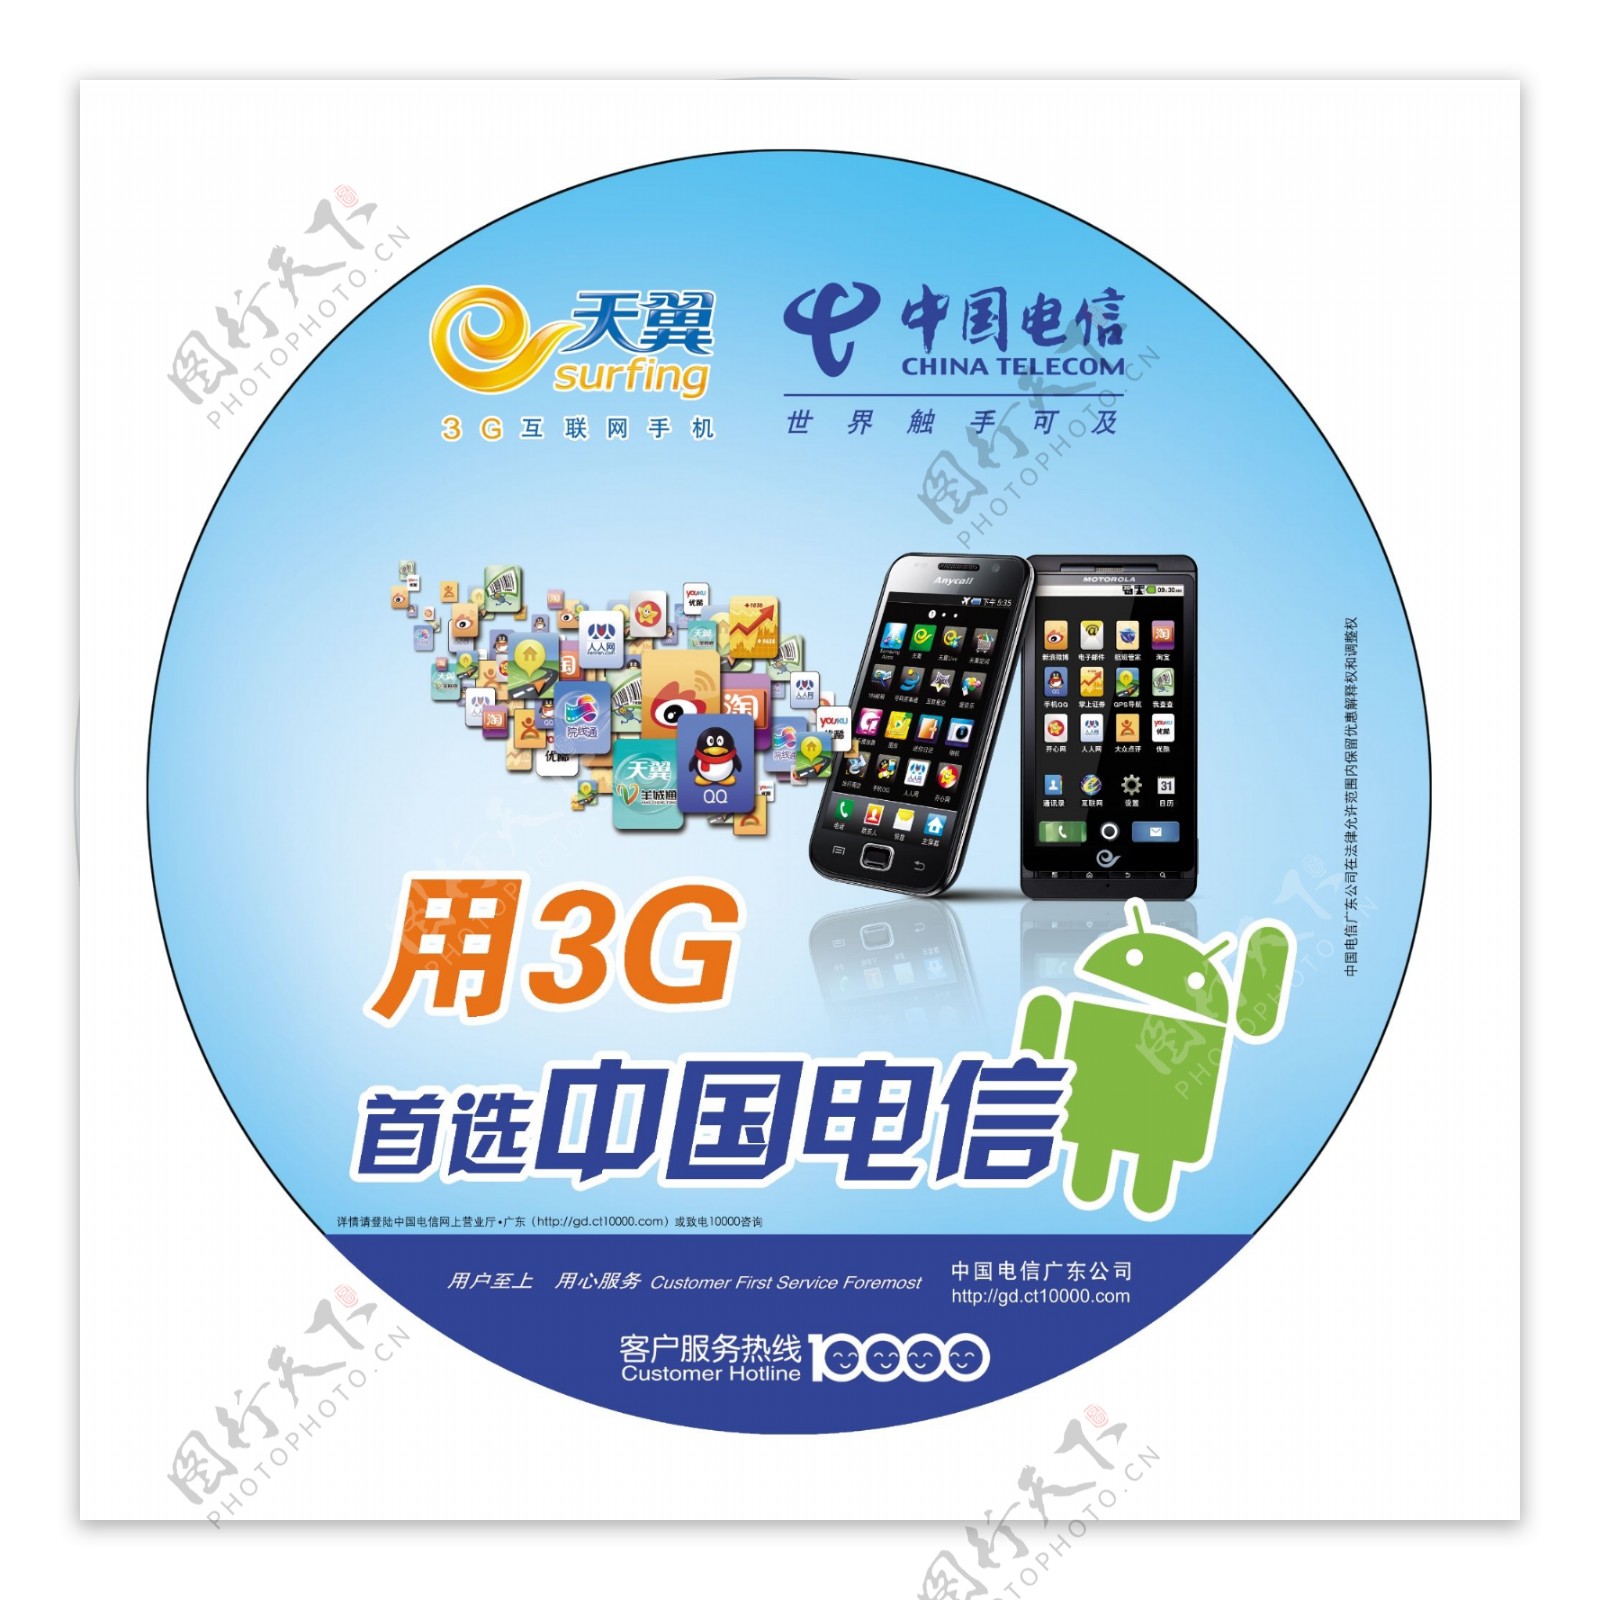 中国电信3g智能手机圆形灯箱图片